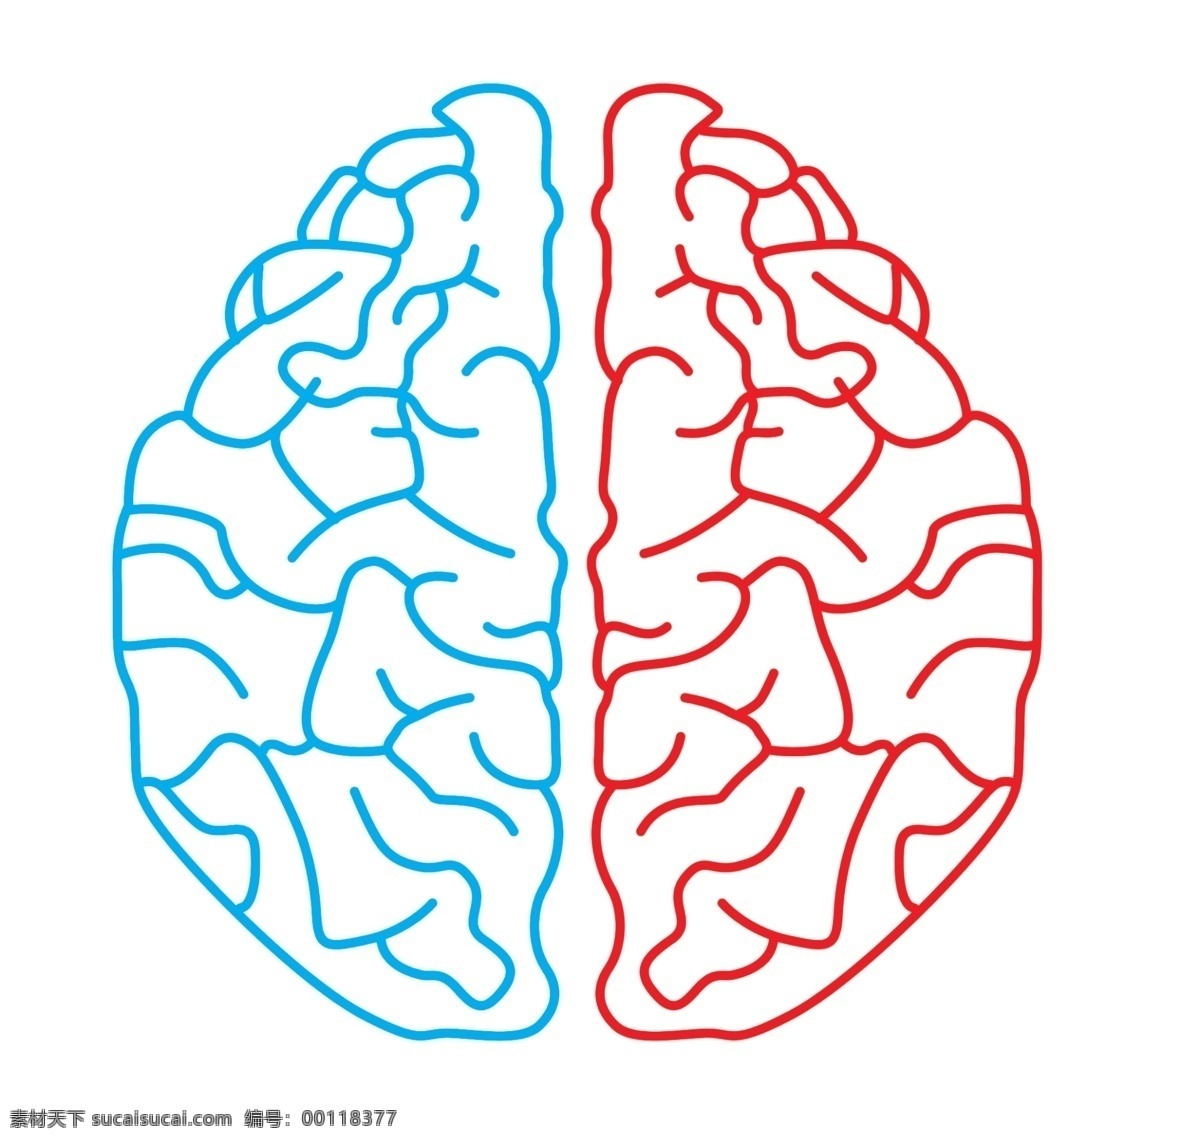 大脑 左脑 右脑 脑袋 智慧 线条脑子 左右脑 其他模版 广告设计模板 源文件